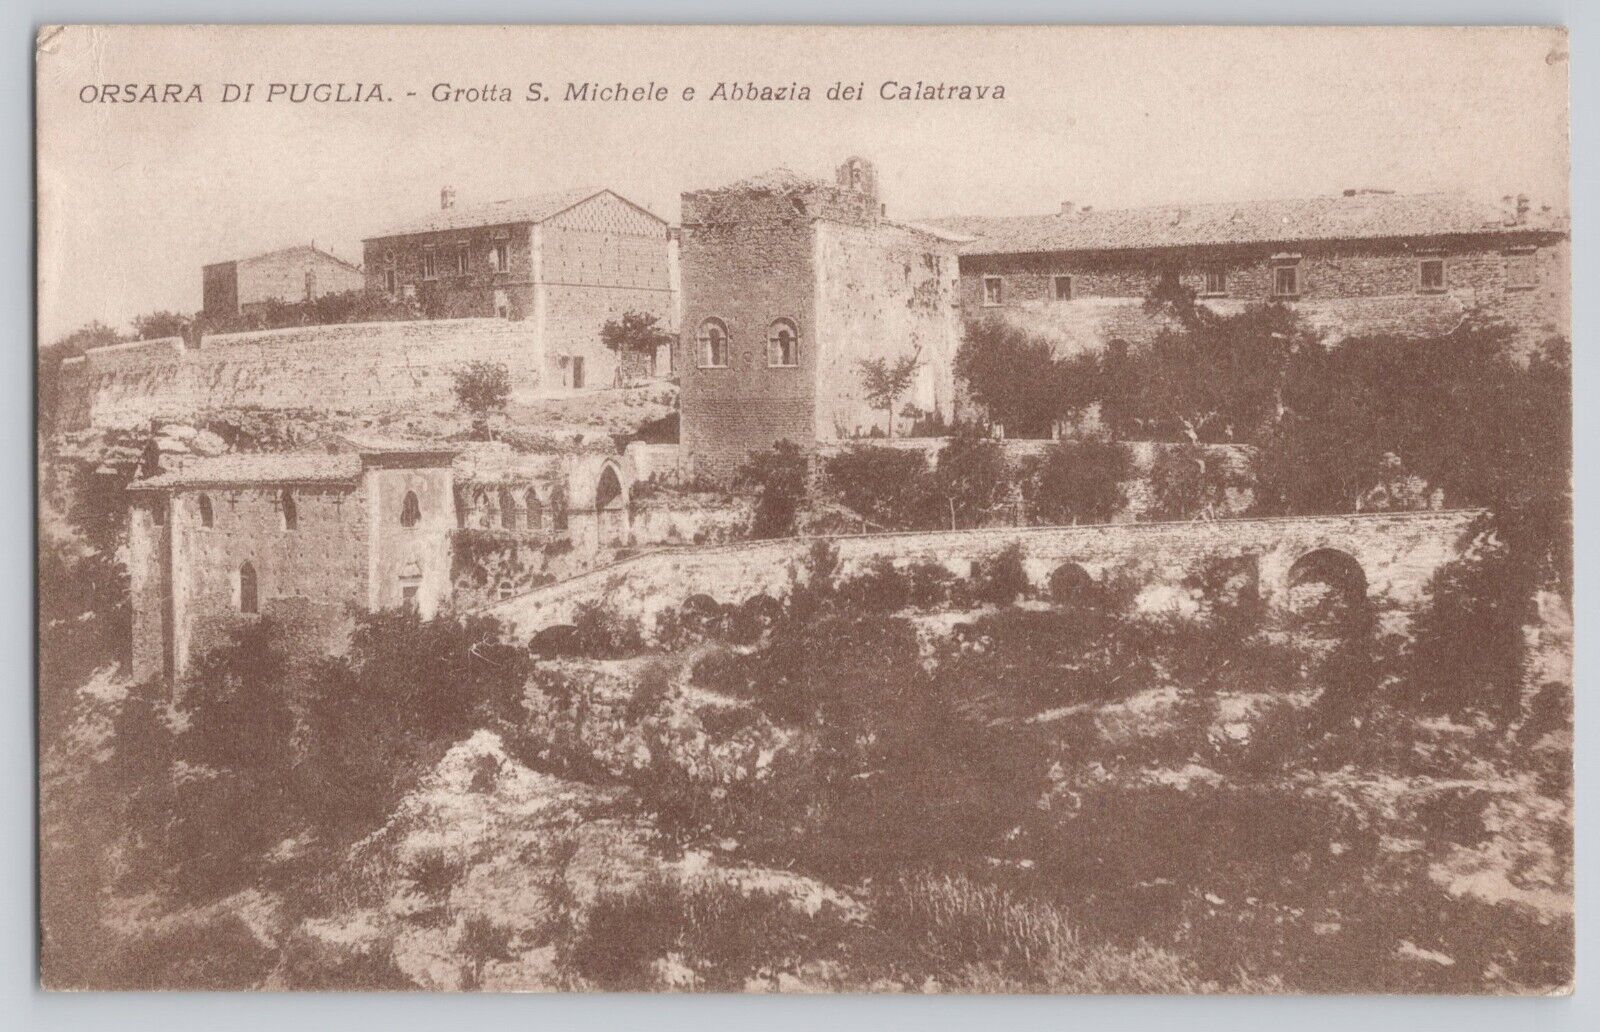 Orsara di Puglia Grotta S. Michele e Abbazia dei Calatrava Postcard 1920s